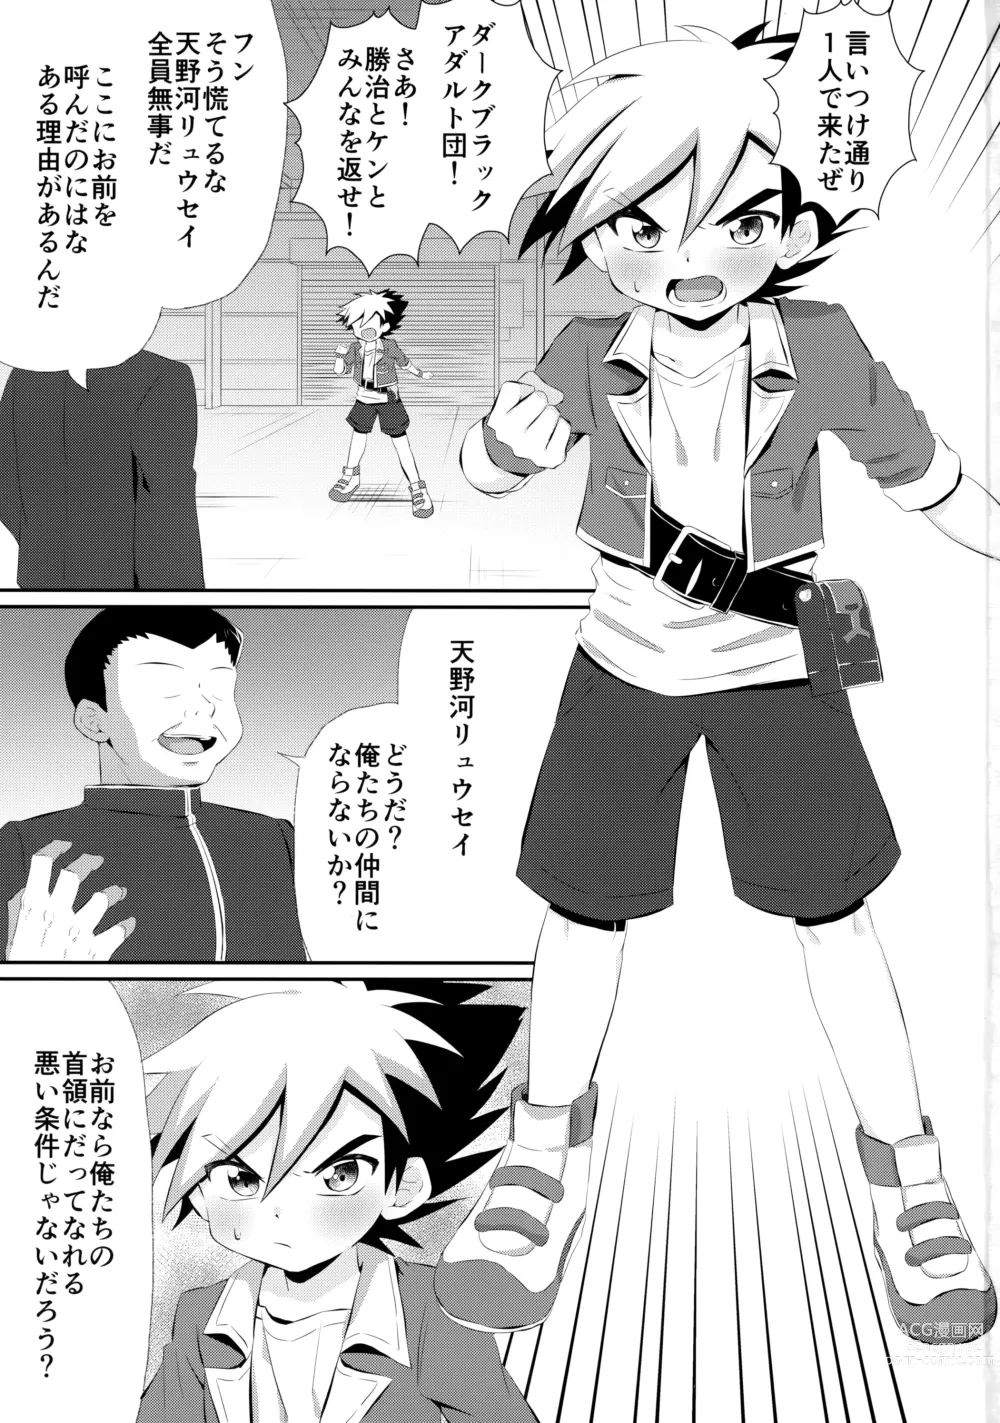 Page 2 of doujinshi Ryuuseisan ga Hikyouna Otona Bougubatora Nanka ni Makeru wake ga Nai!